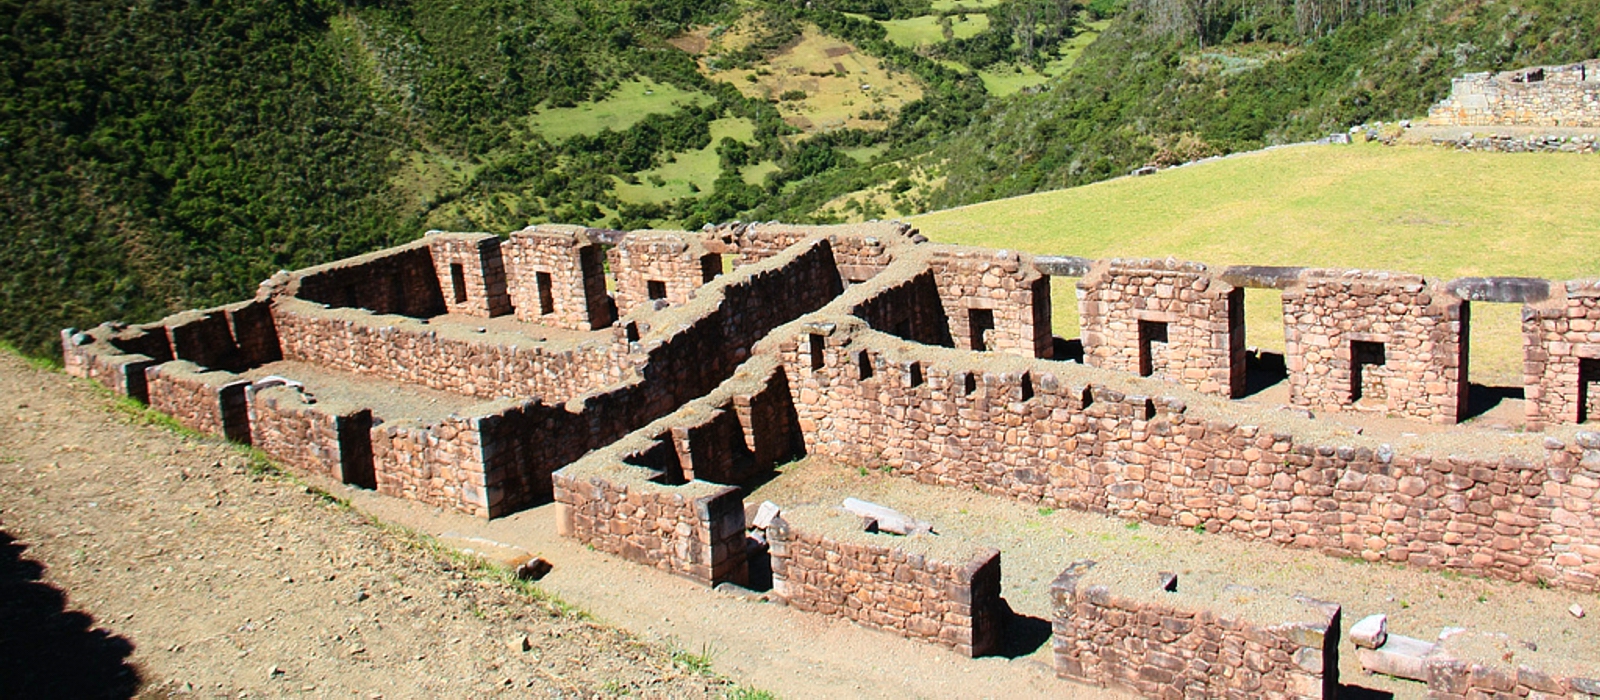 12 Day Vilcabamba Trek to Machu Picchu